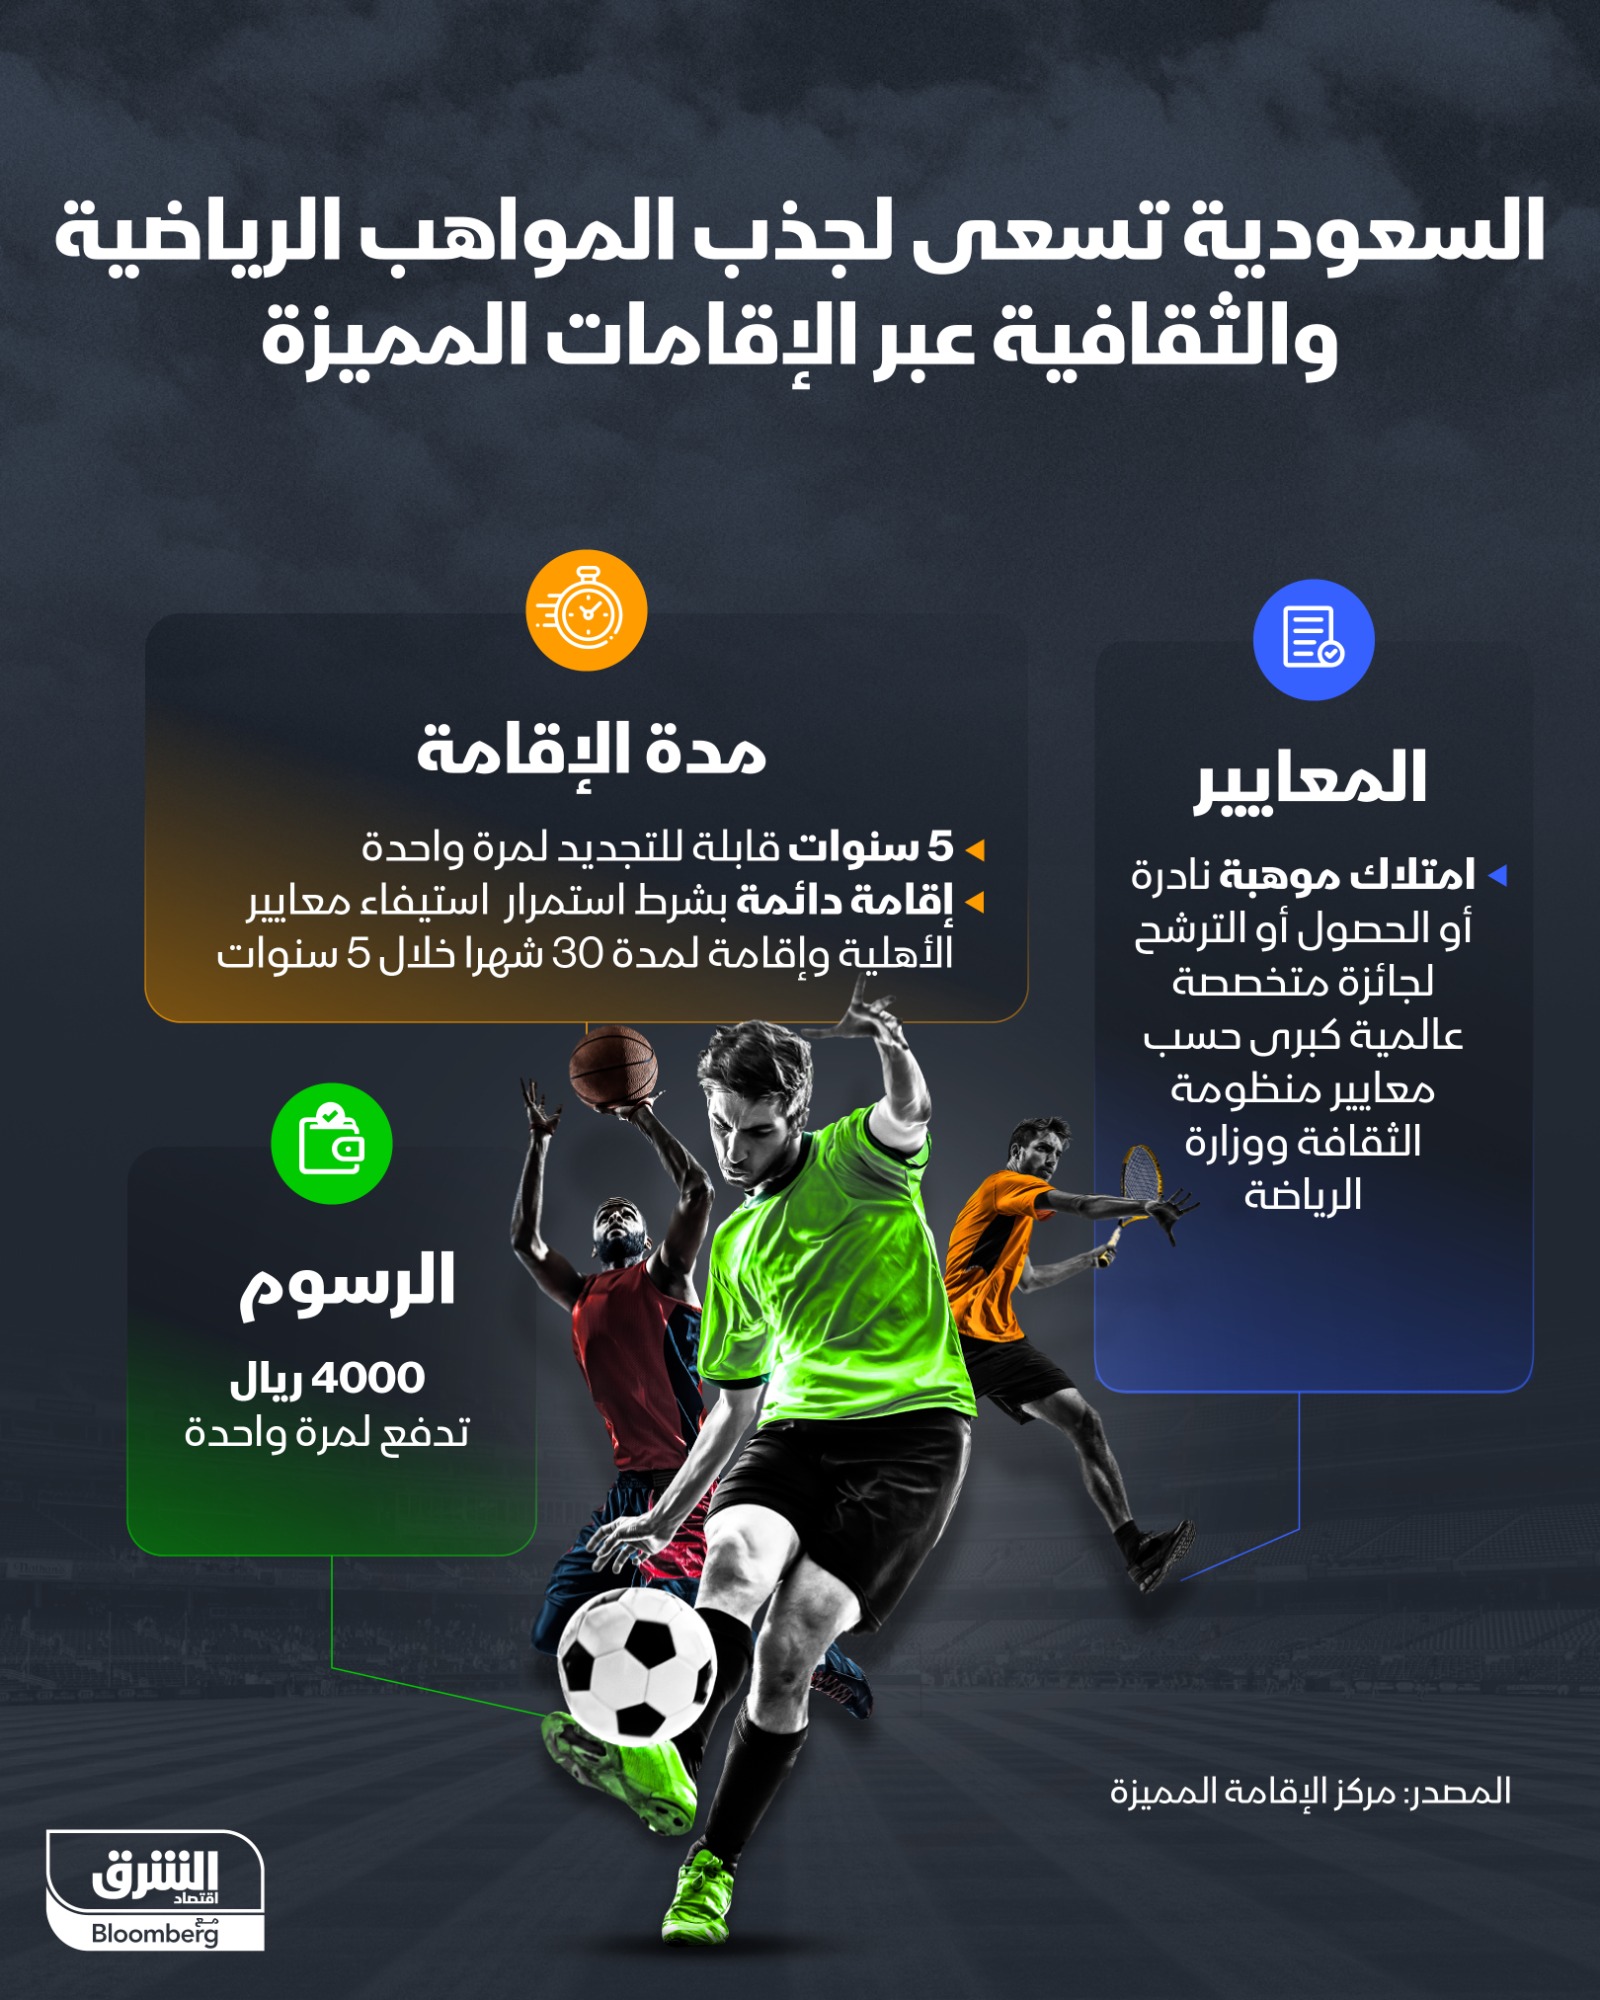 إنفوجرافيك يوضح شروط وإجراءات الحصول على إقامة أصحاب المواهب الرياضية والثقافية في السعودية